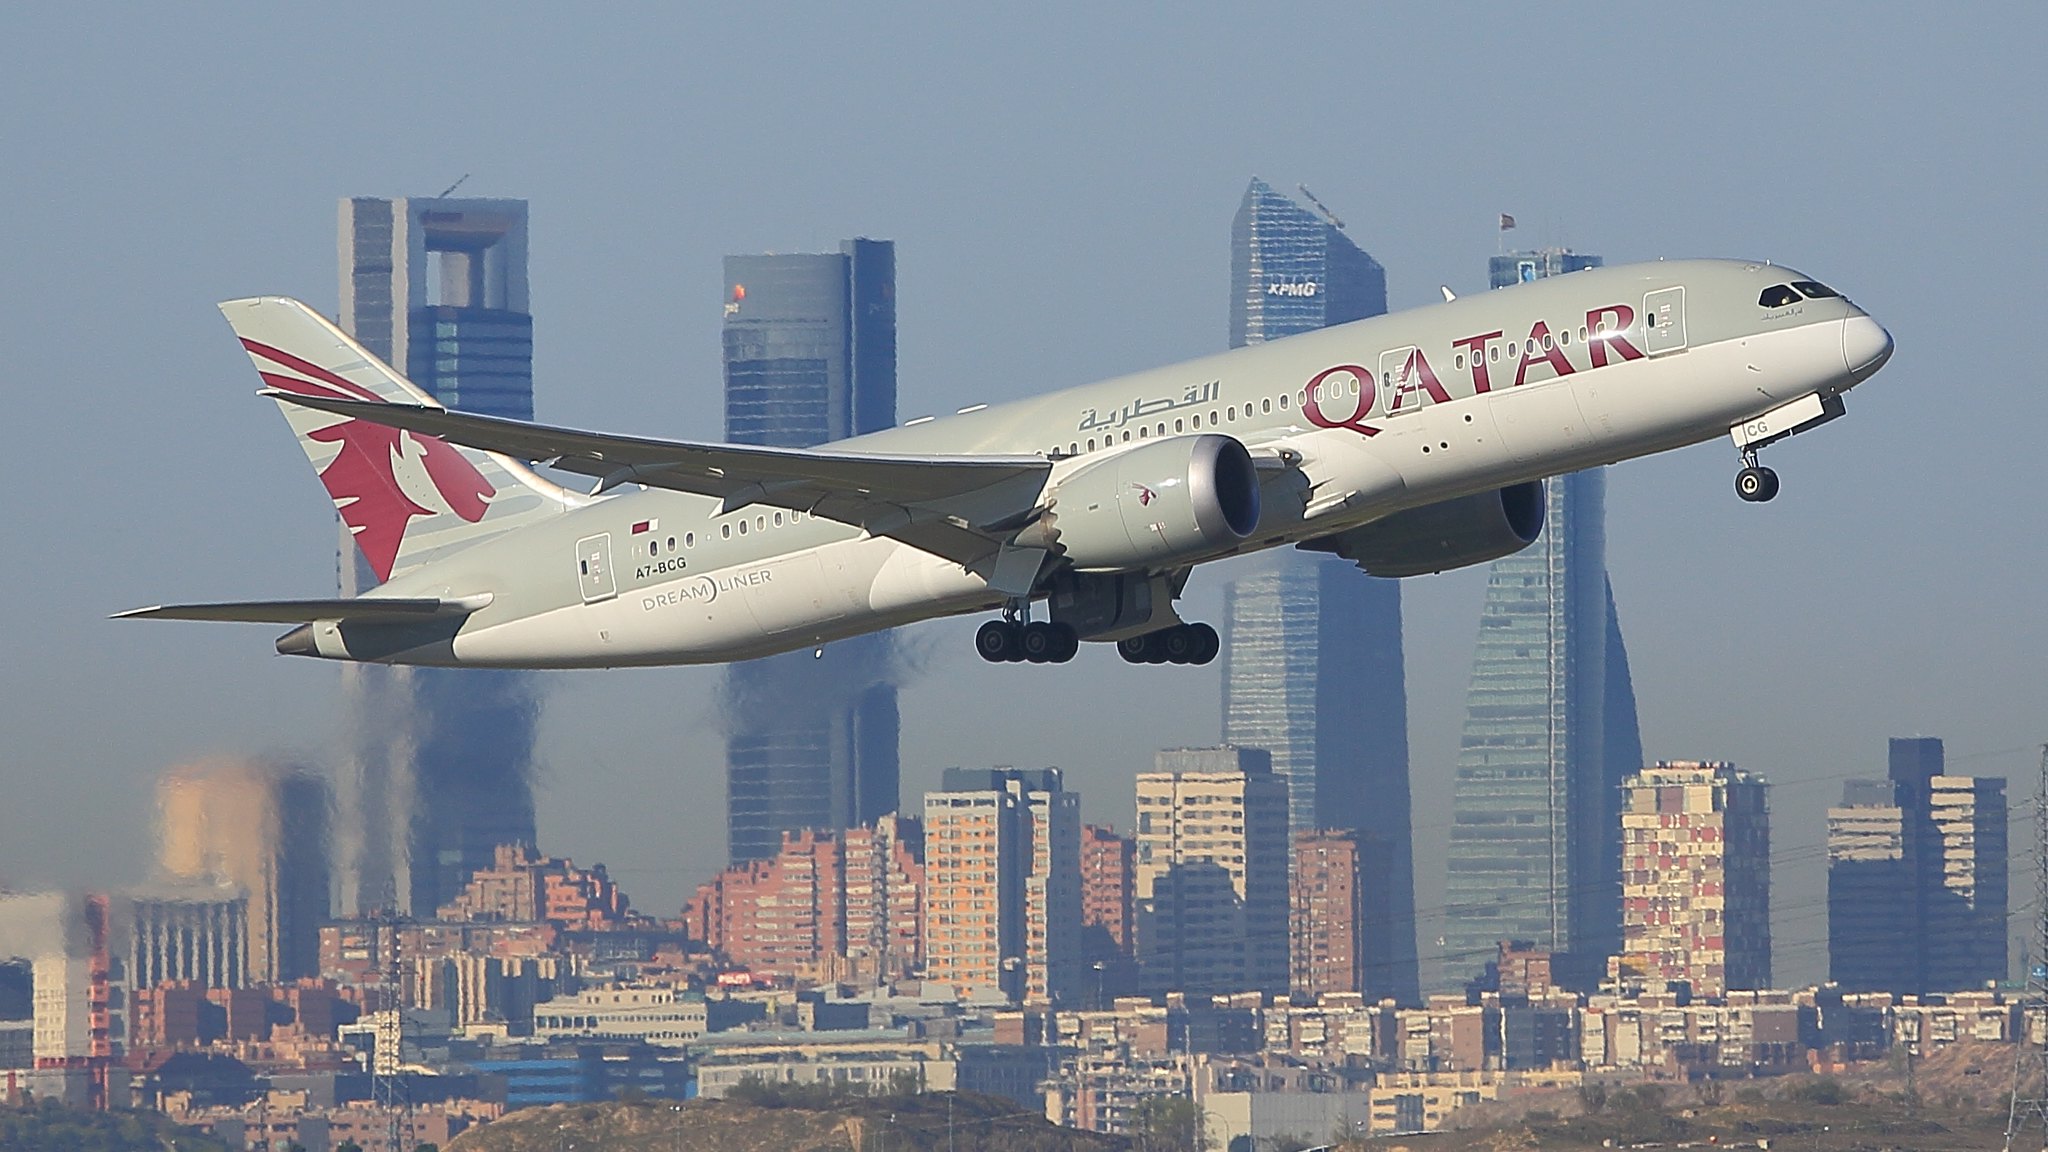 Qatar Airways plane taking off